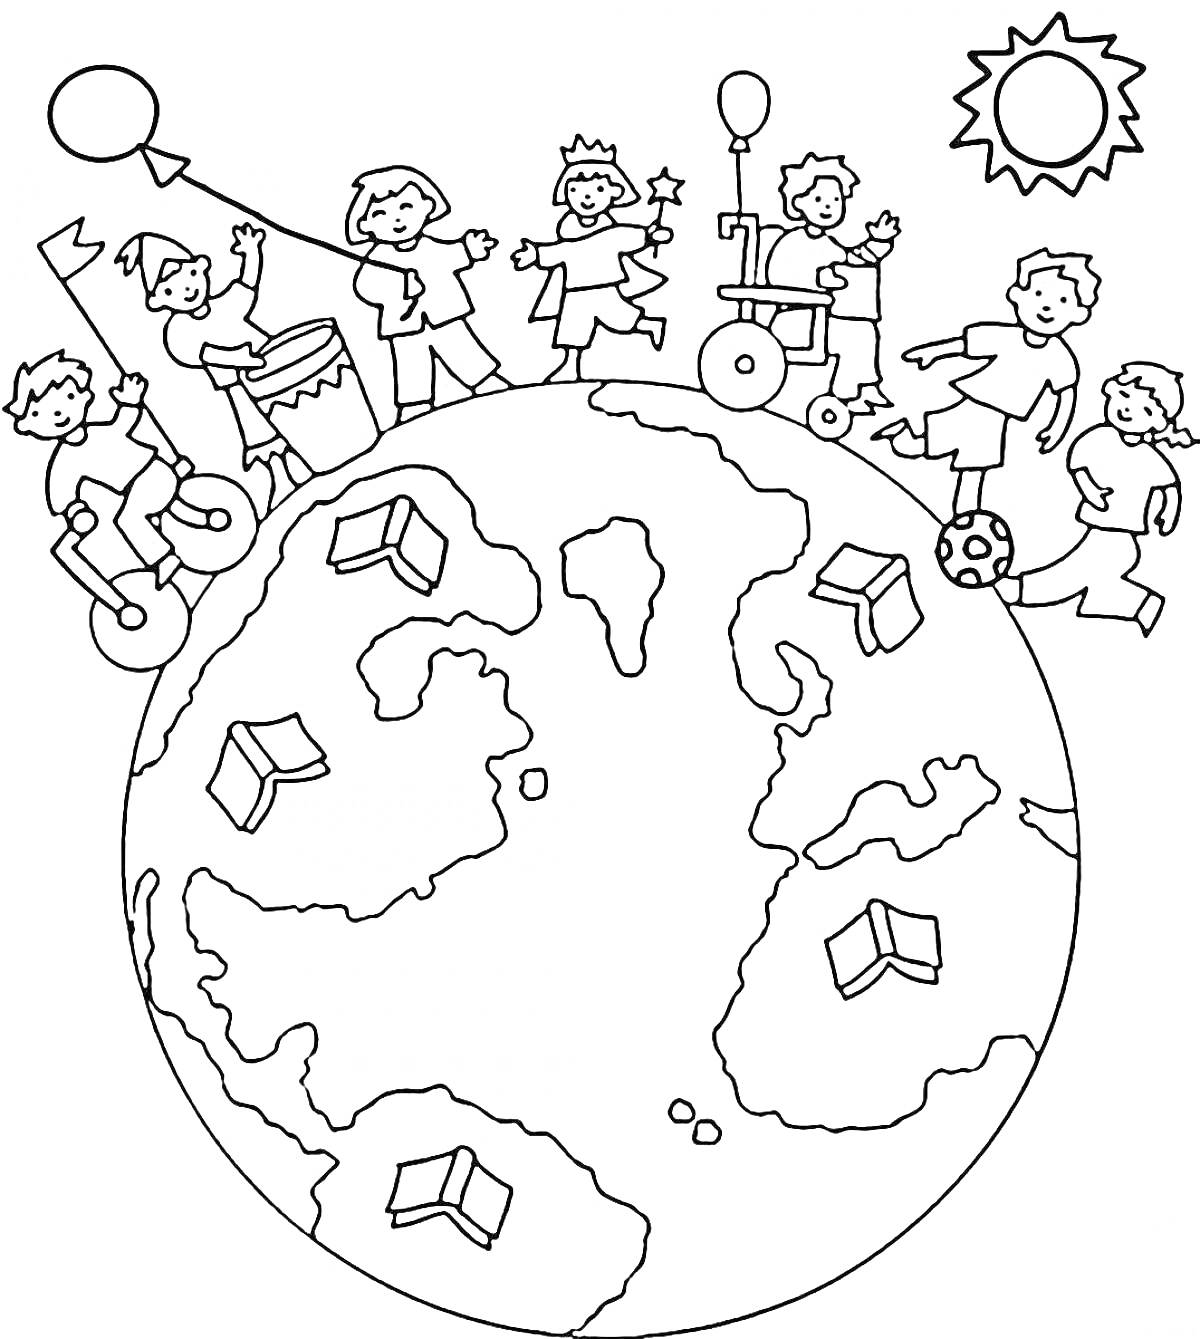 РаскраскаДети, играющие вокруг Земли с книгами и надувным шаром, в окружении солнца